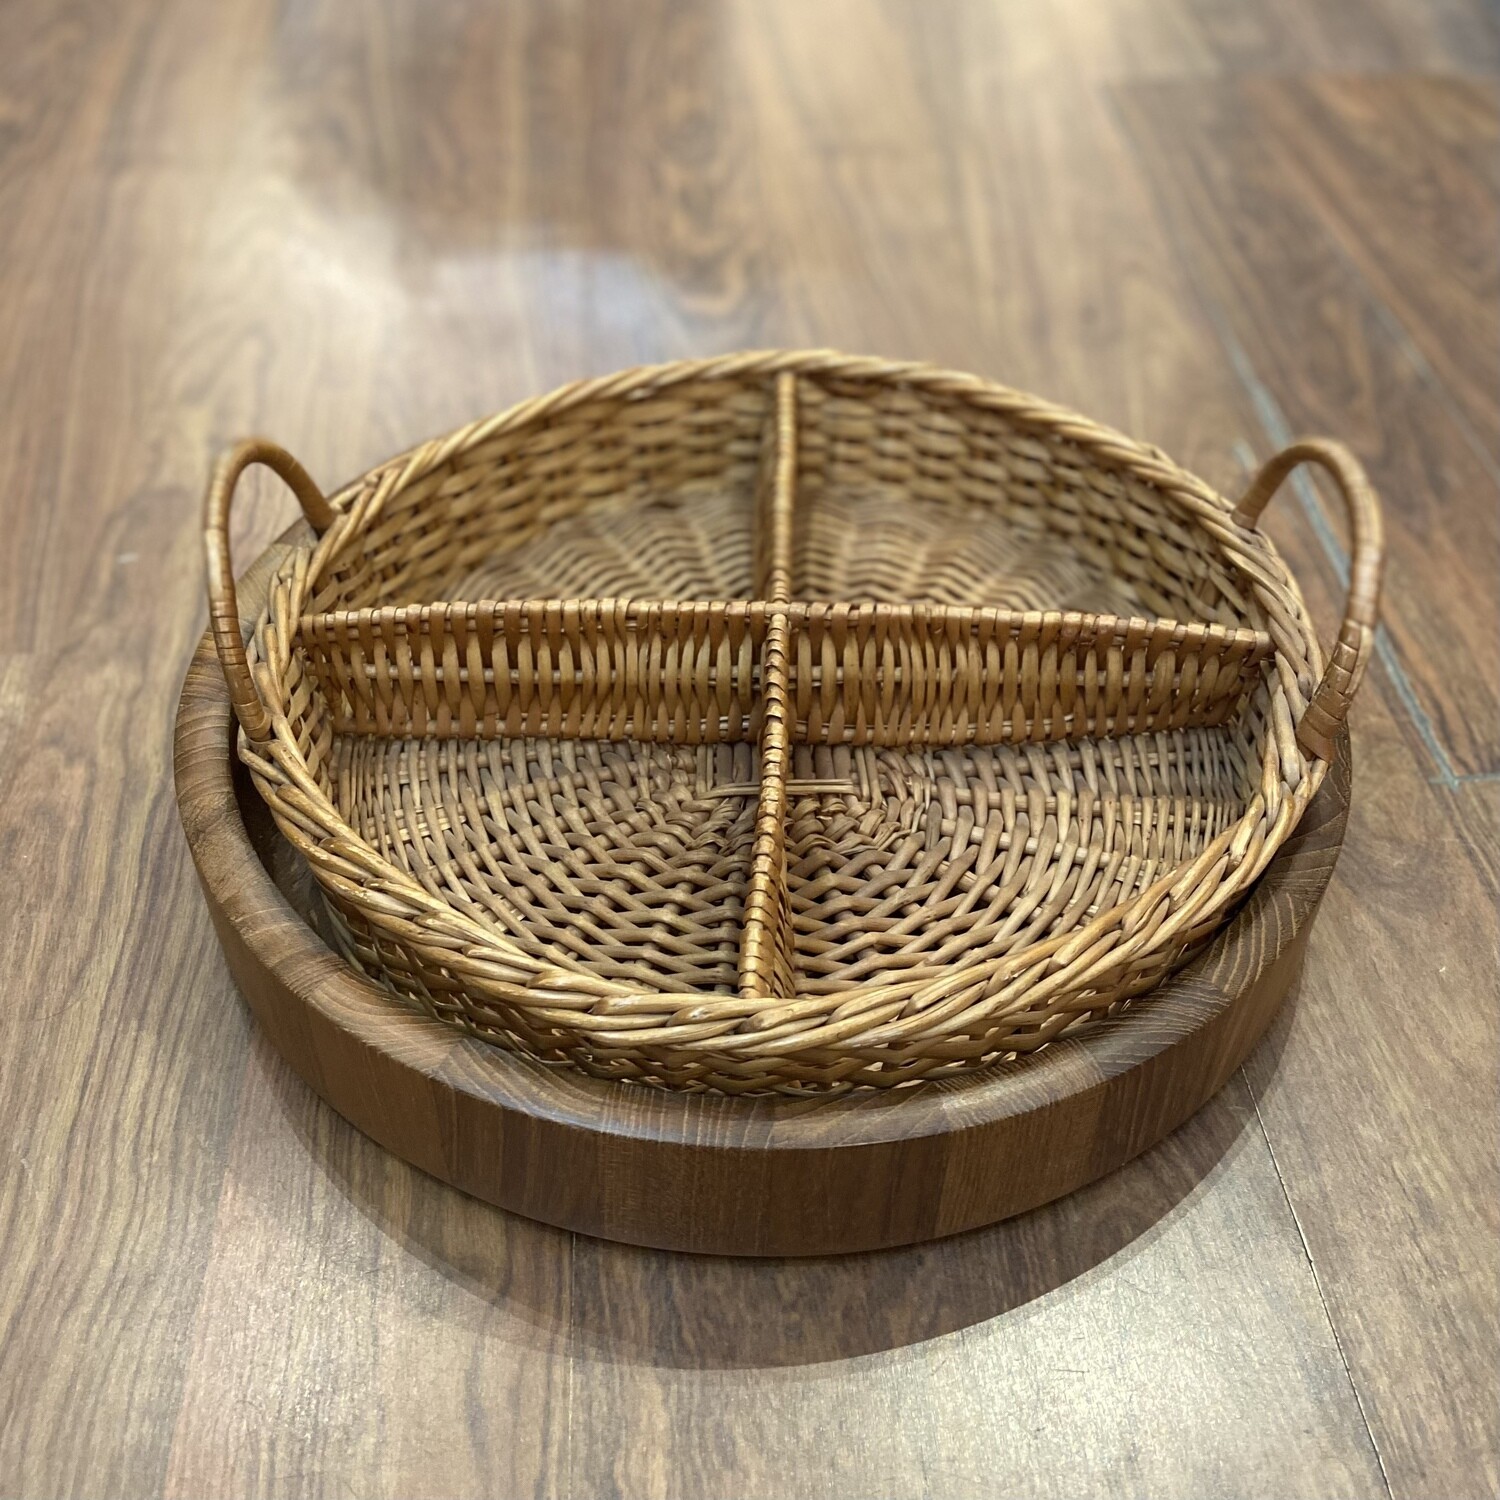 Dansk Designs Wood Serving Tray and Divided Basket Set